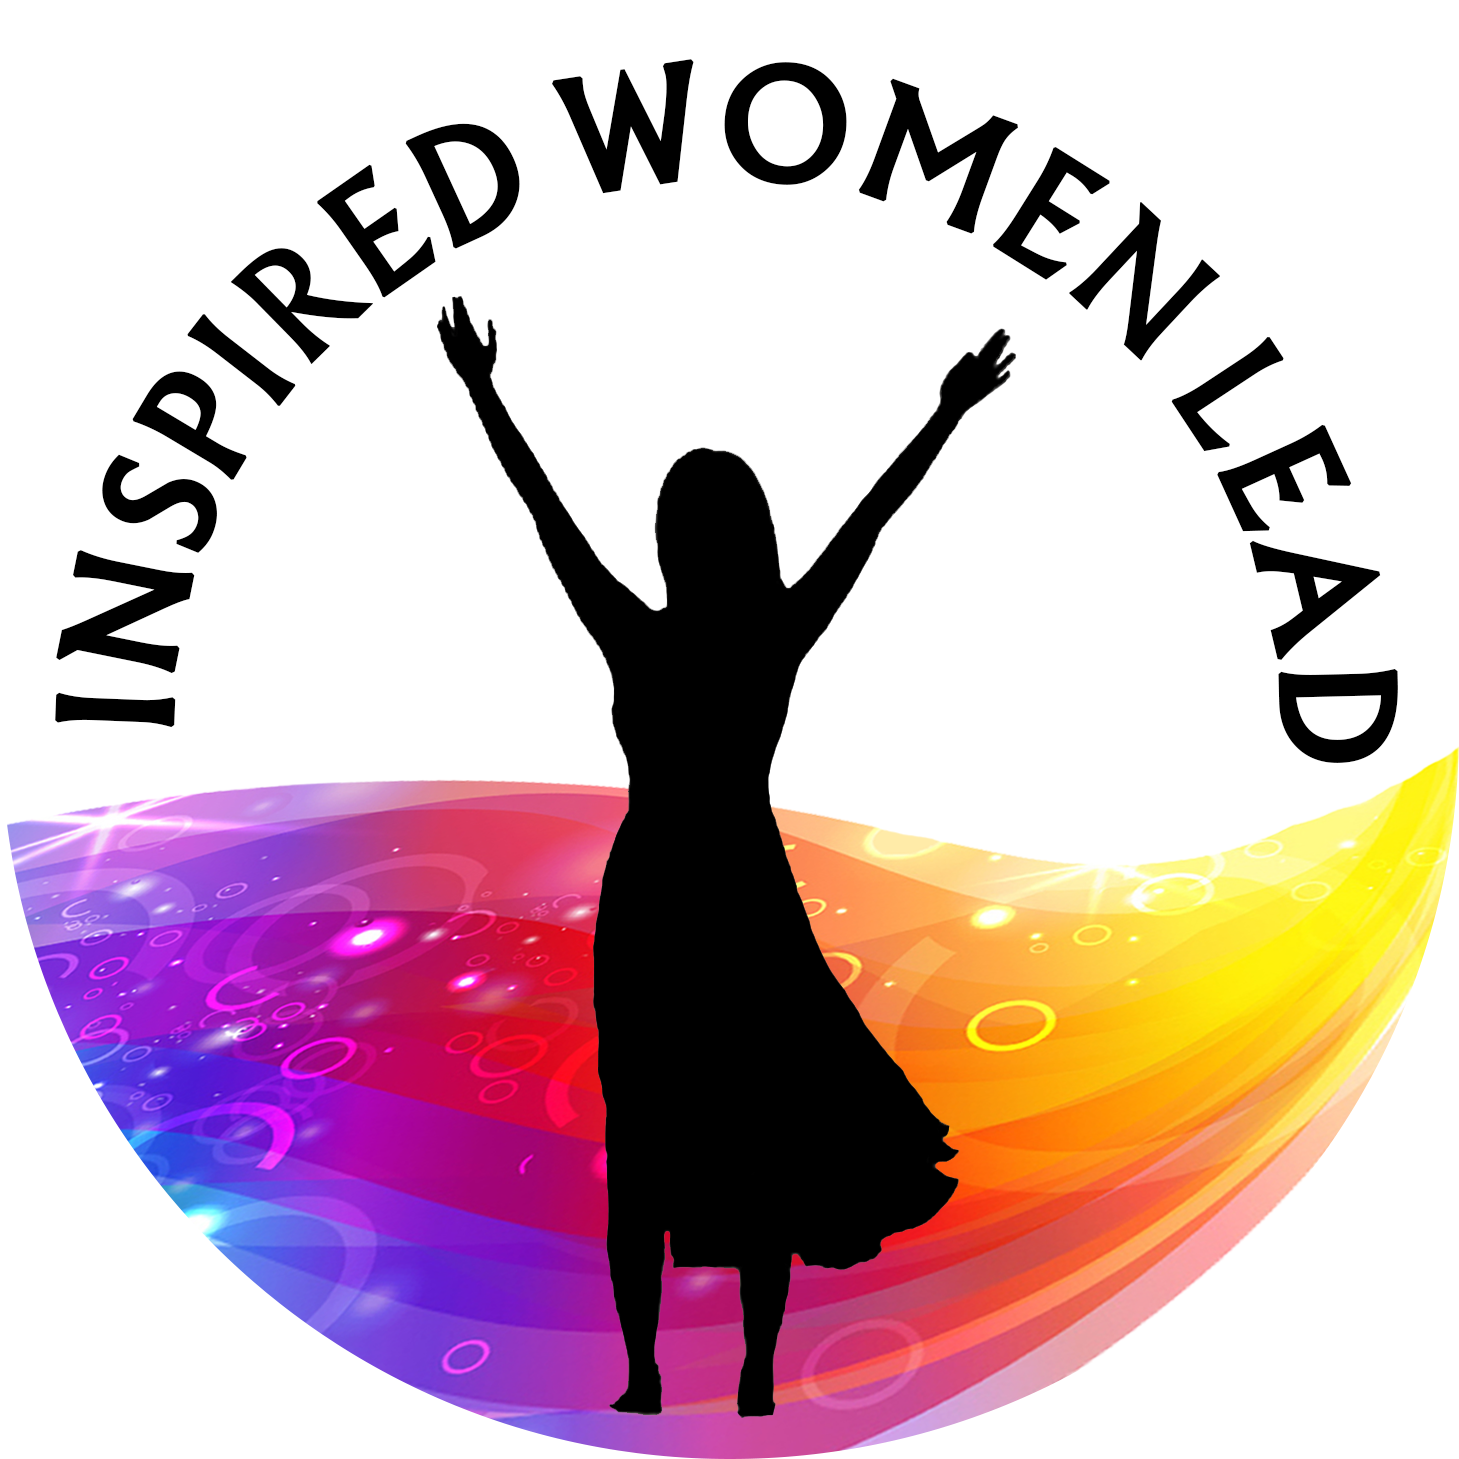 Inspired Women Lead - Women Lead (1500x1500)